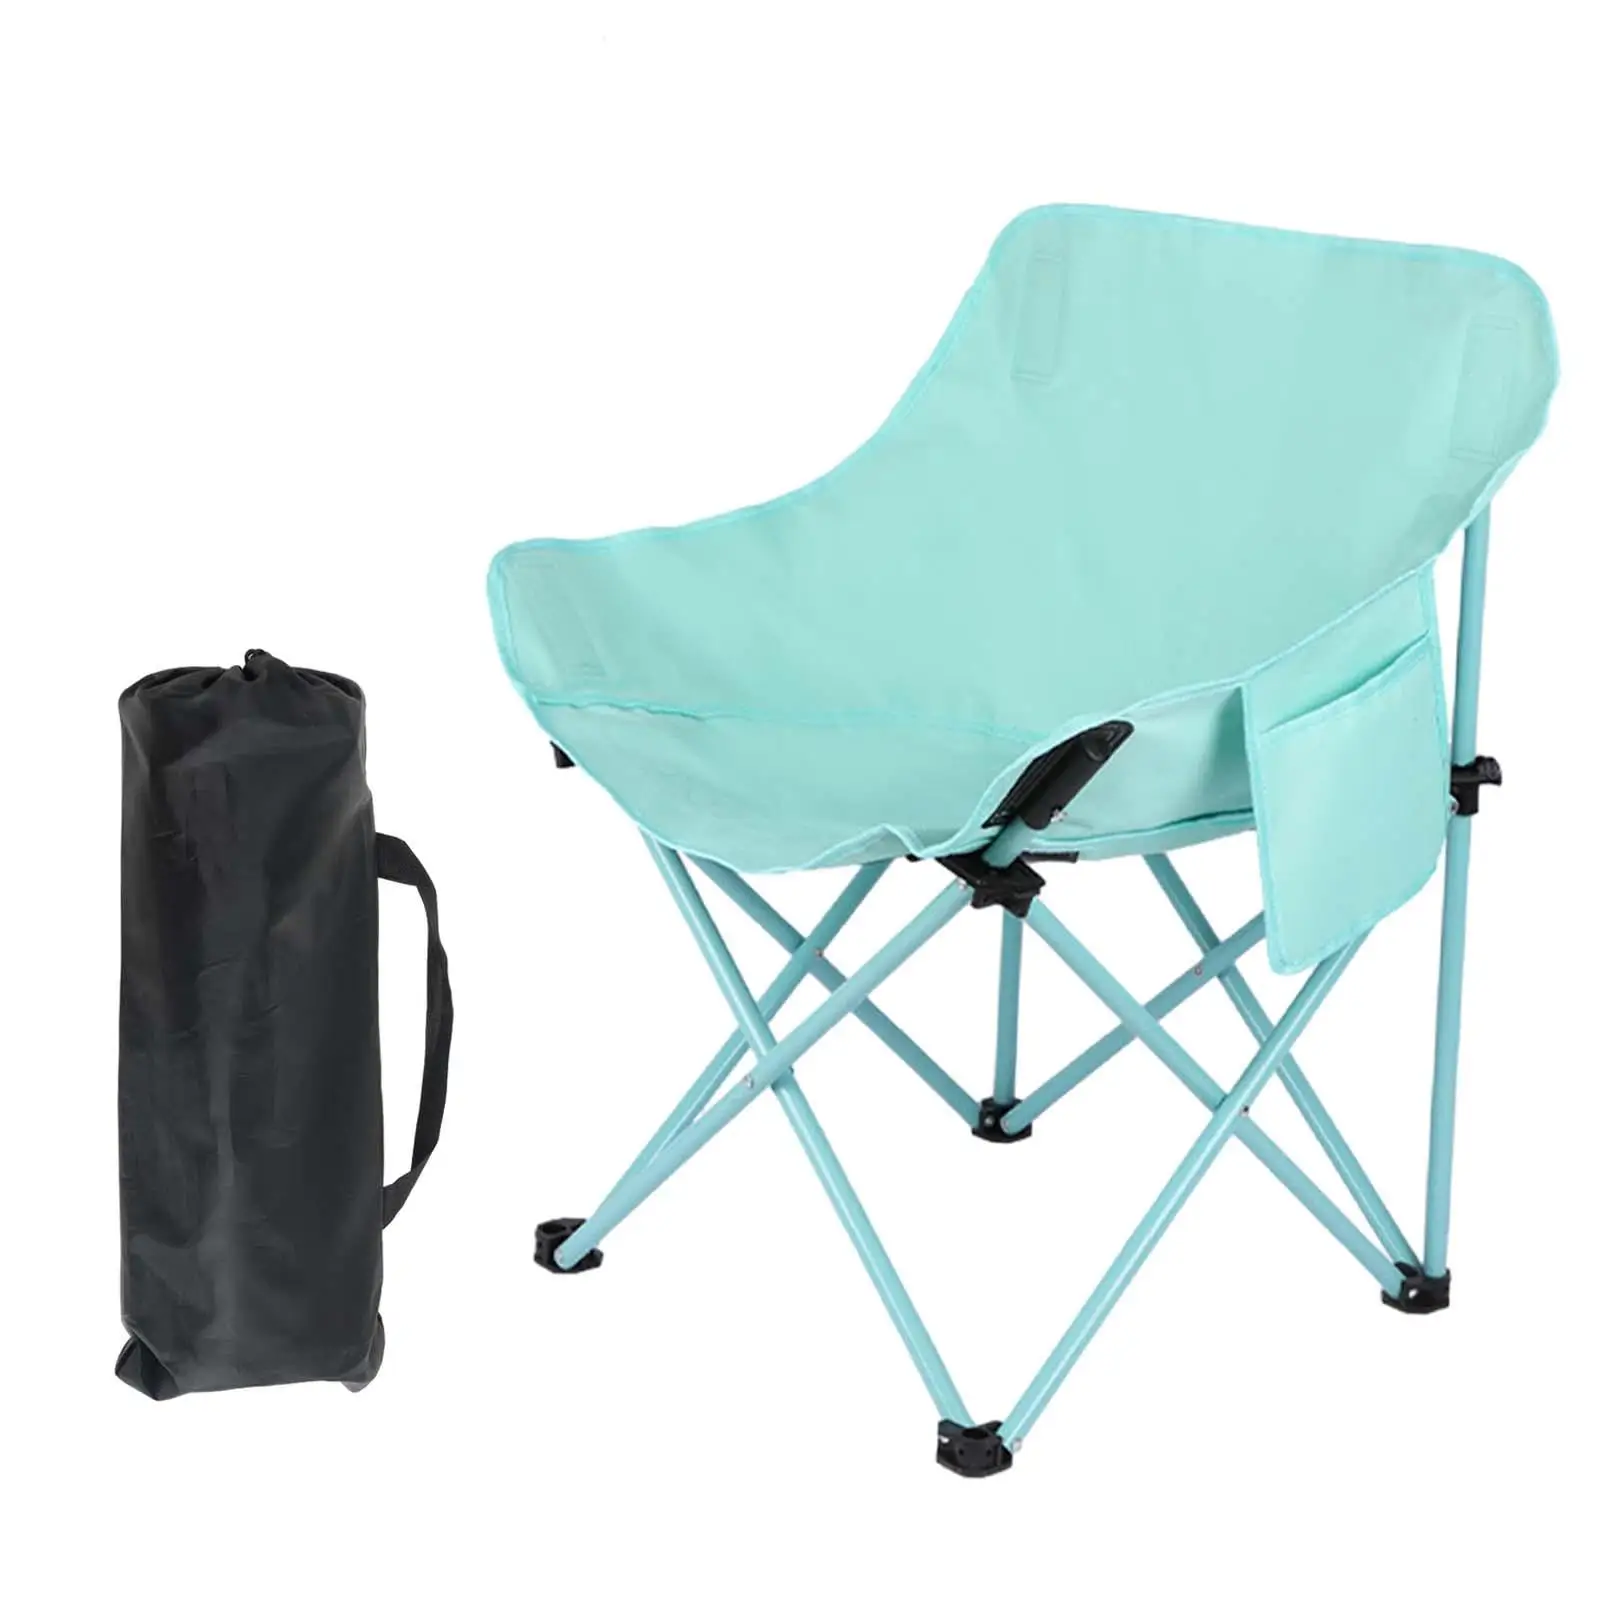 Folding Camping Chair Practical Non-Slip Folding Chair Portable Beach Chair